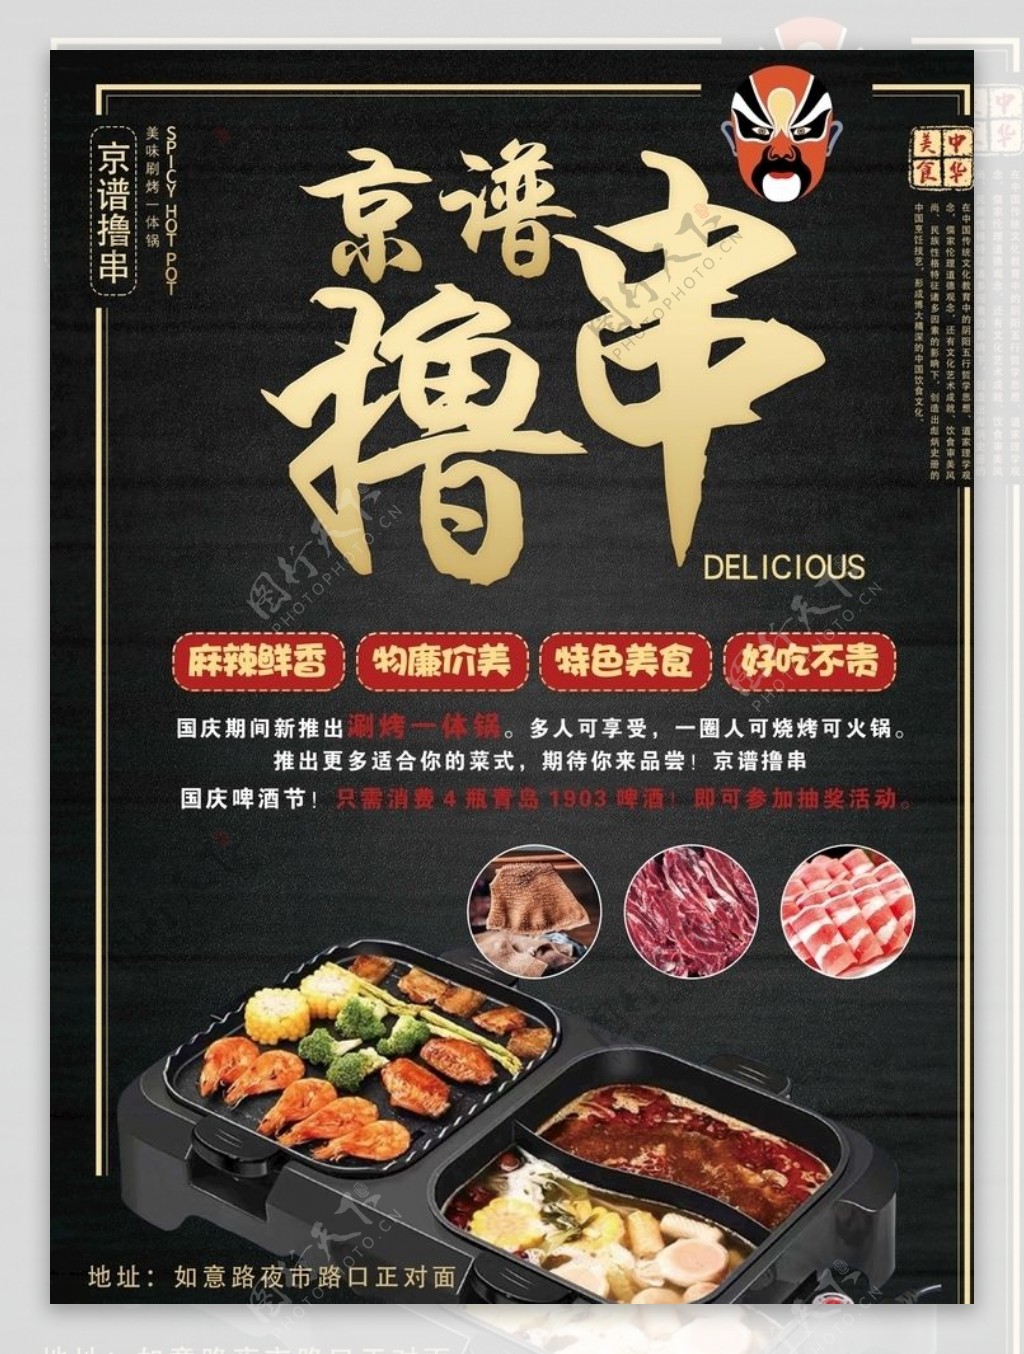 火锅烤串店宣传单图片